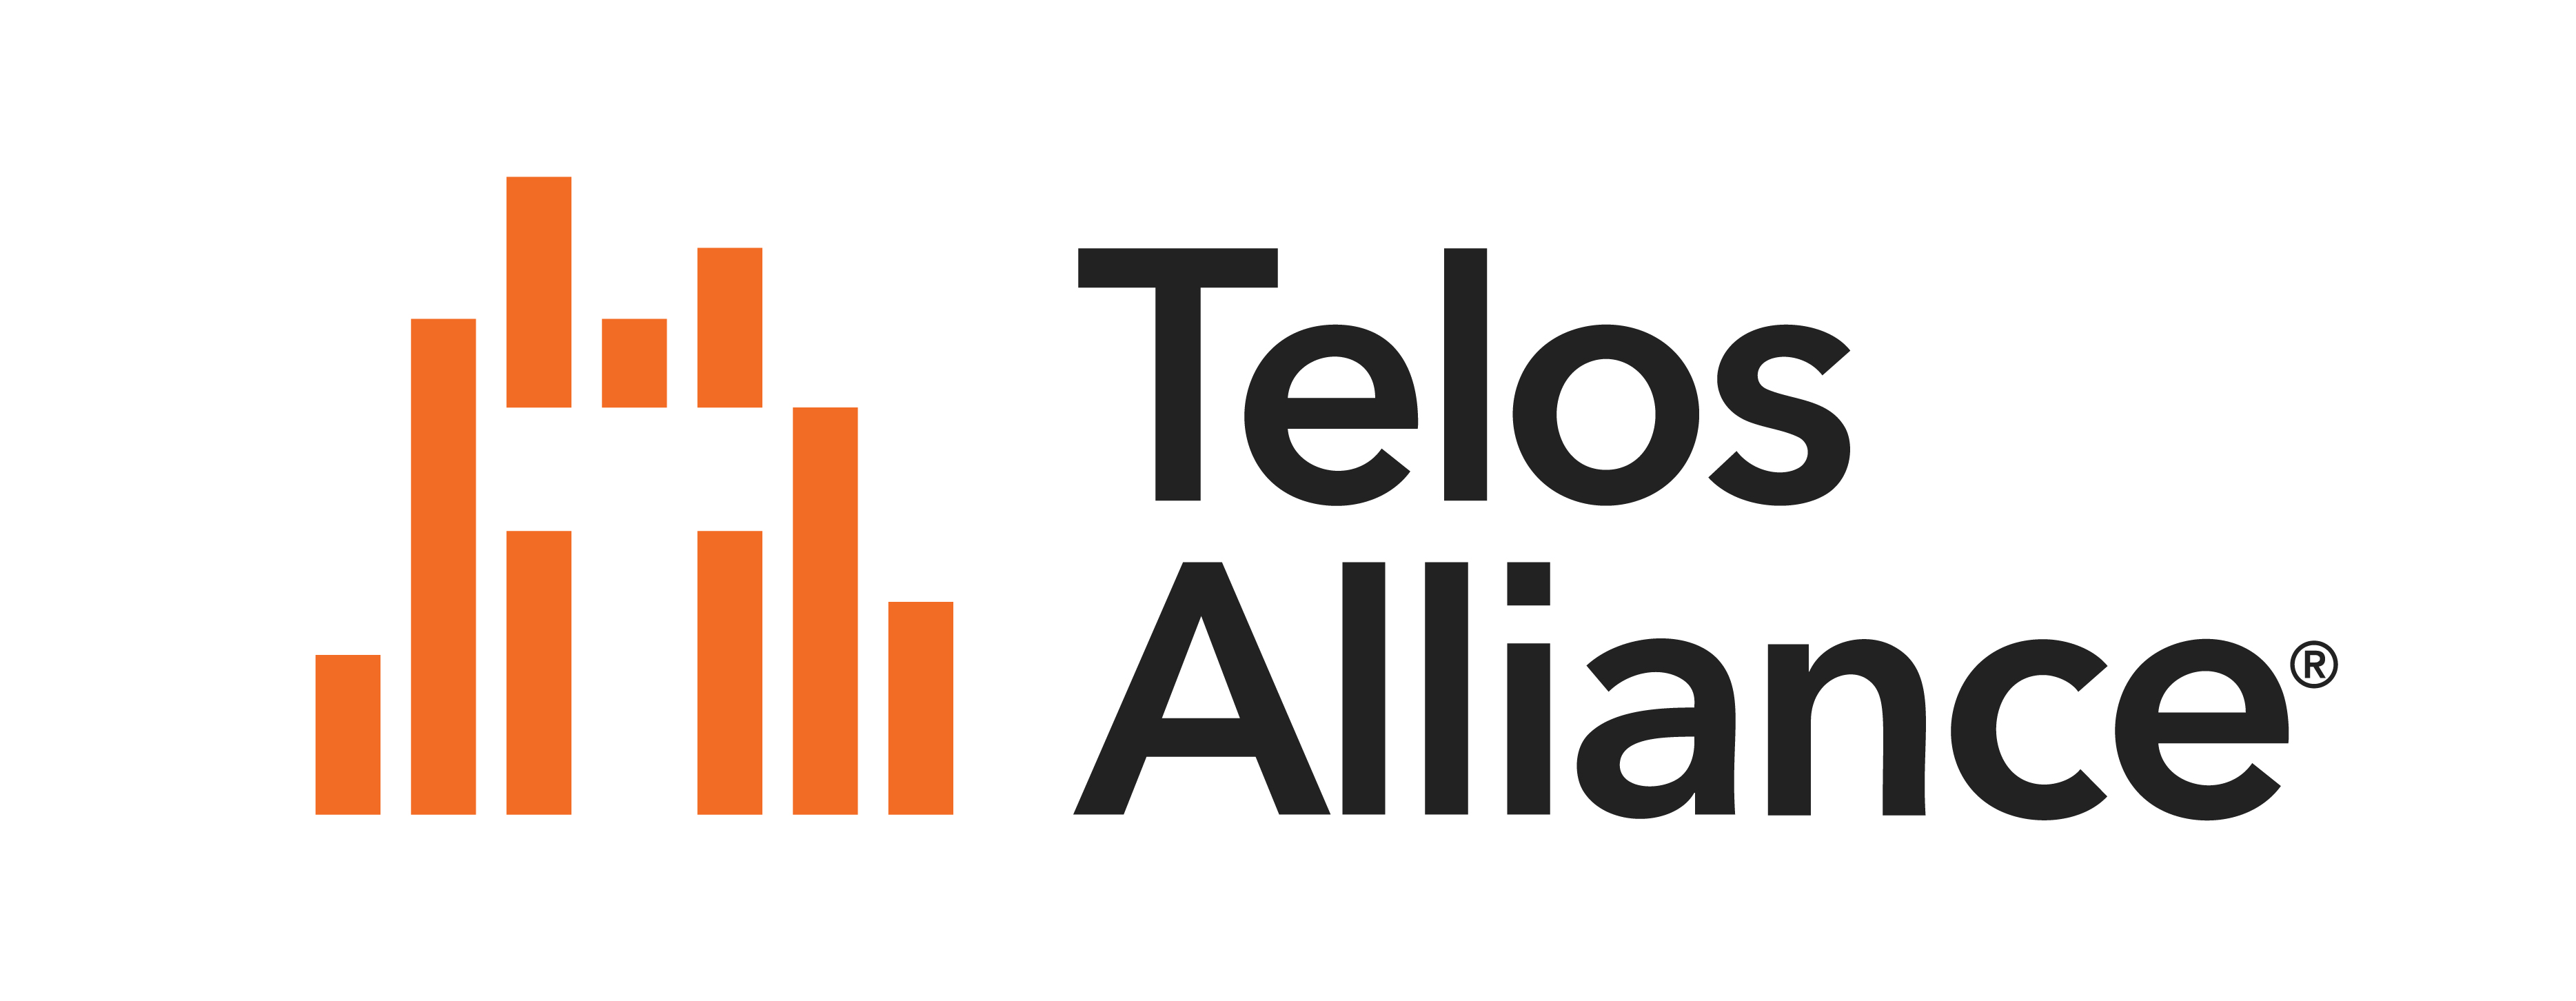 Telos Alliance Logo 2020 Orange Gray White Background 16